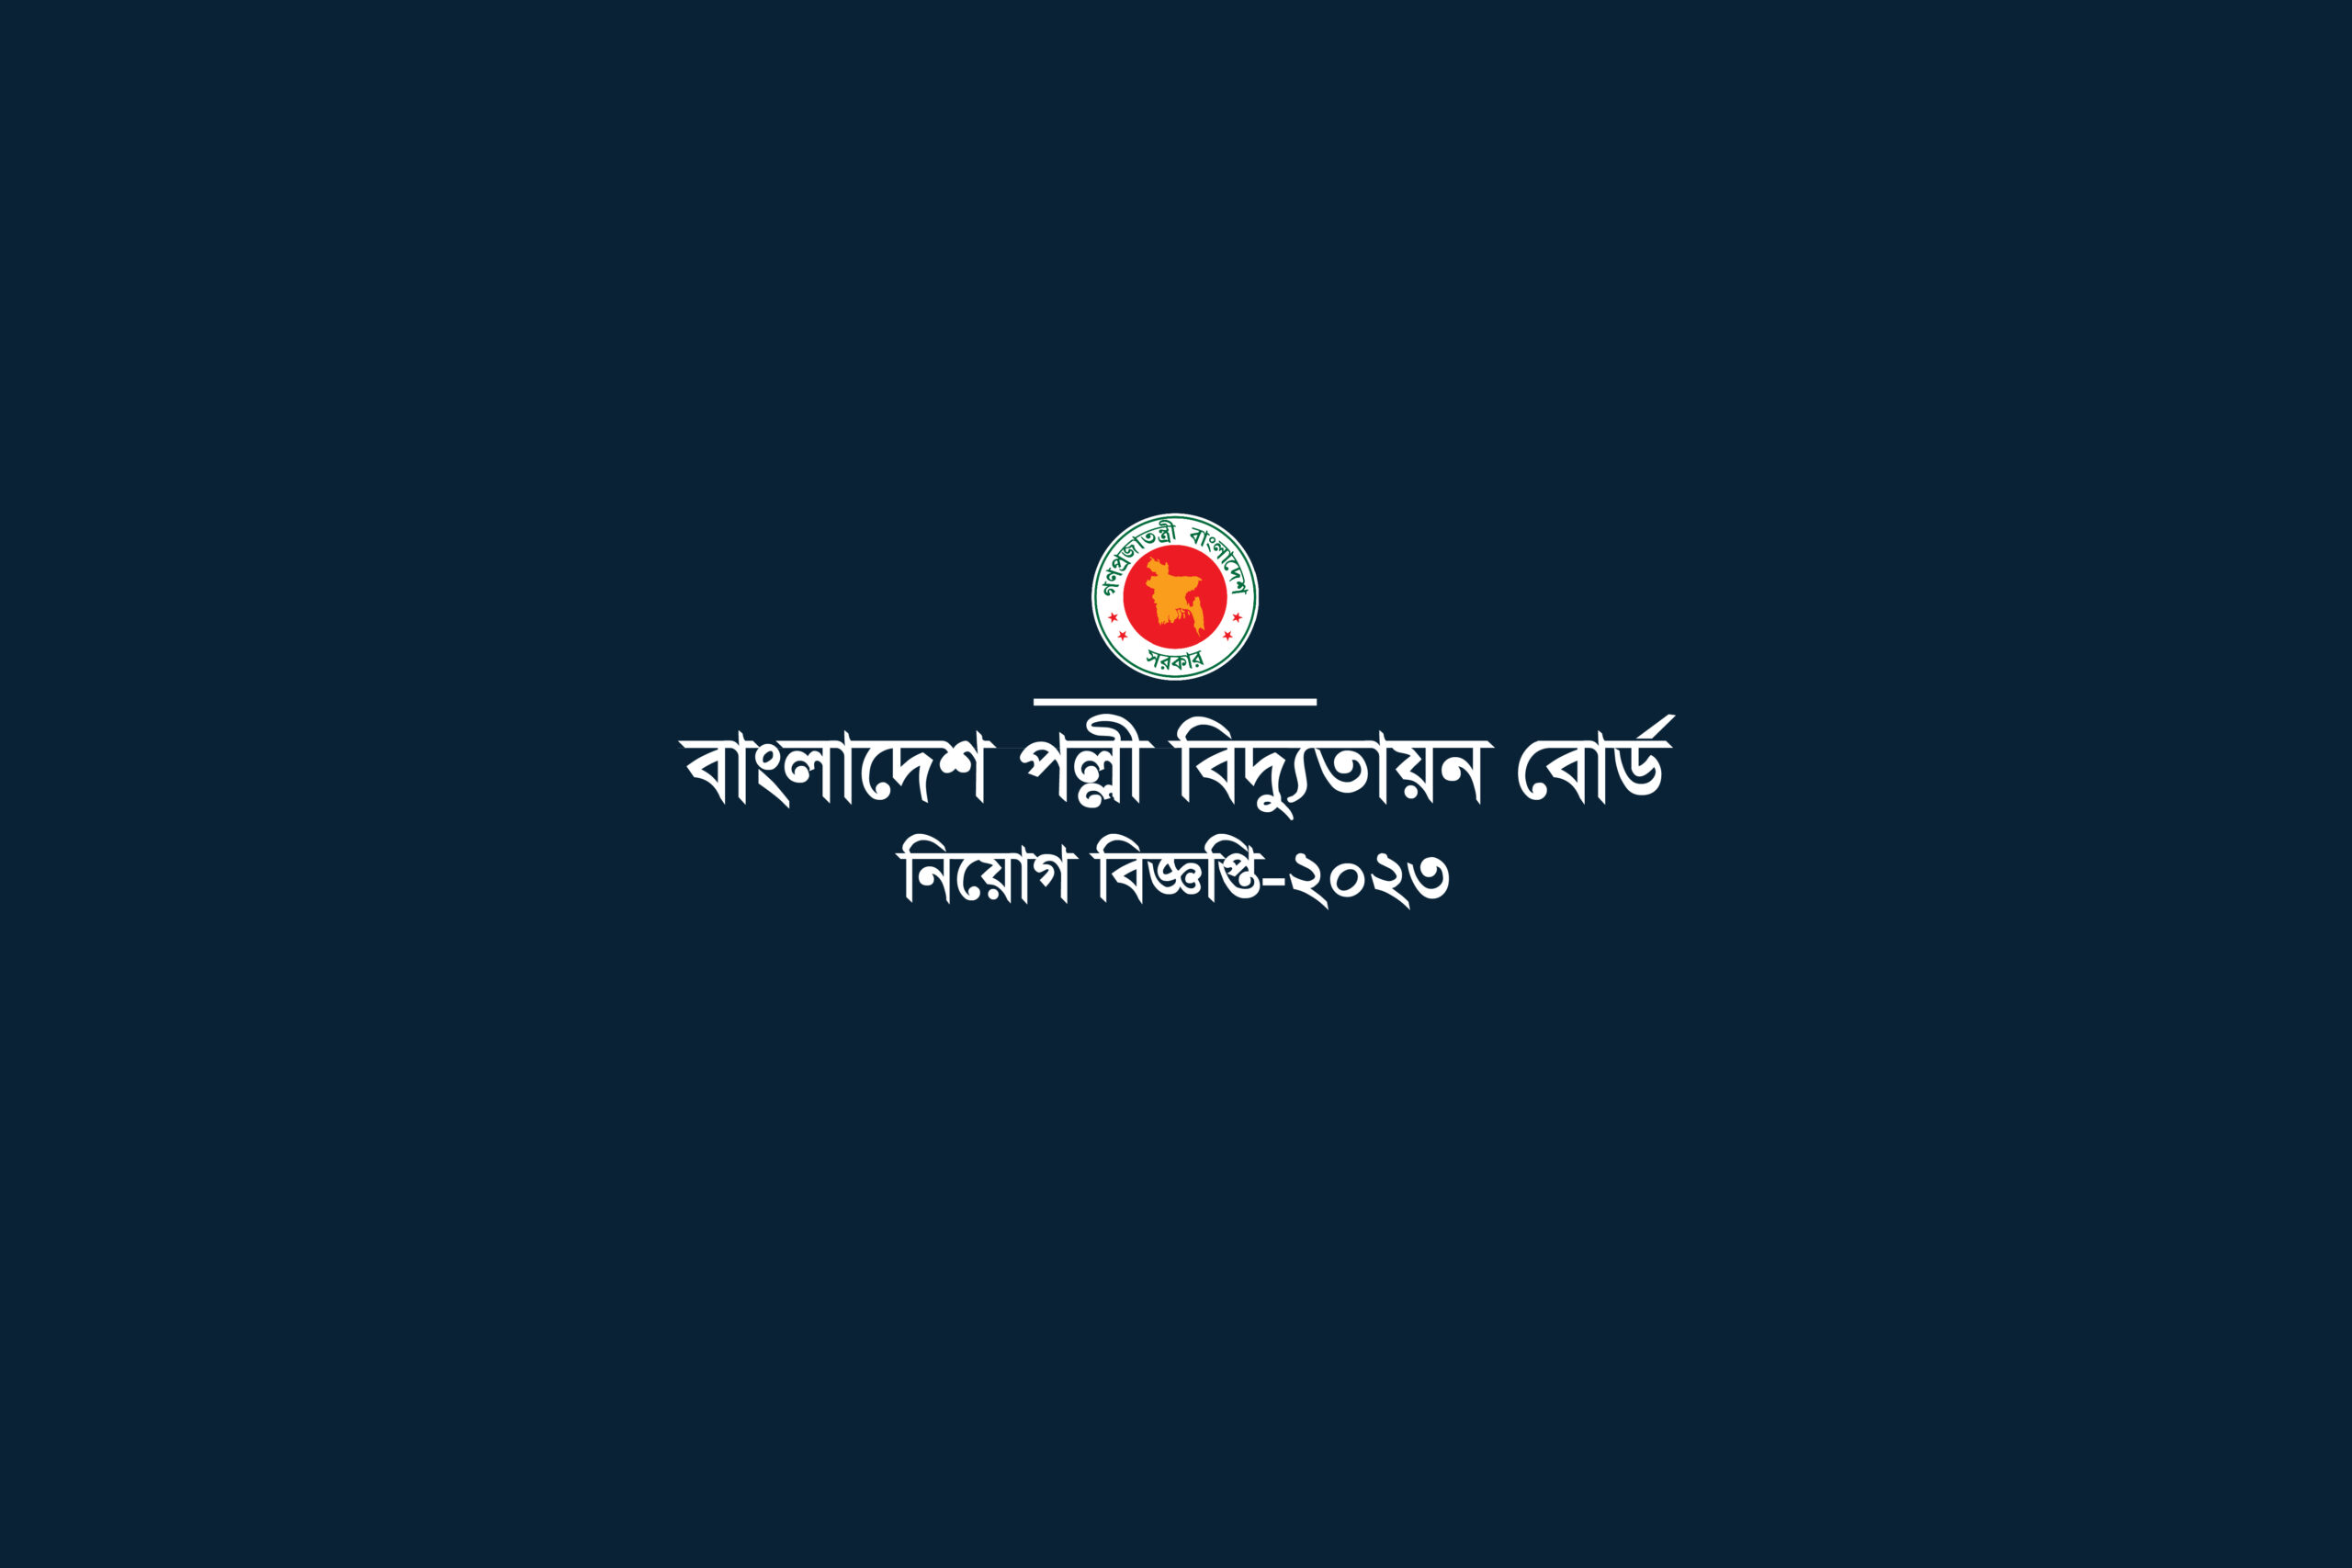 বাংলাদেশ পল্লী বিদ্যুতায়ন বোর্ড, নিকুঞ্জ-2 । Bangladesh Rural Electrification Board Job Circular-2023